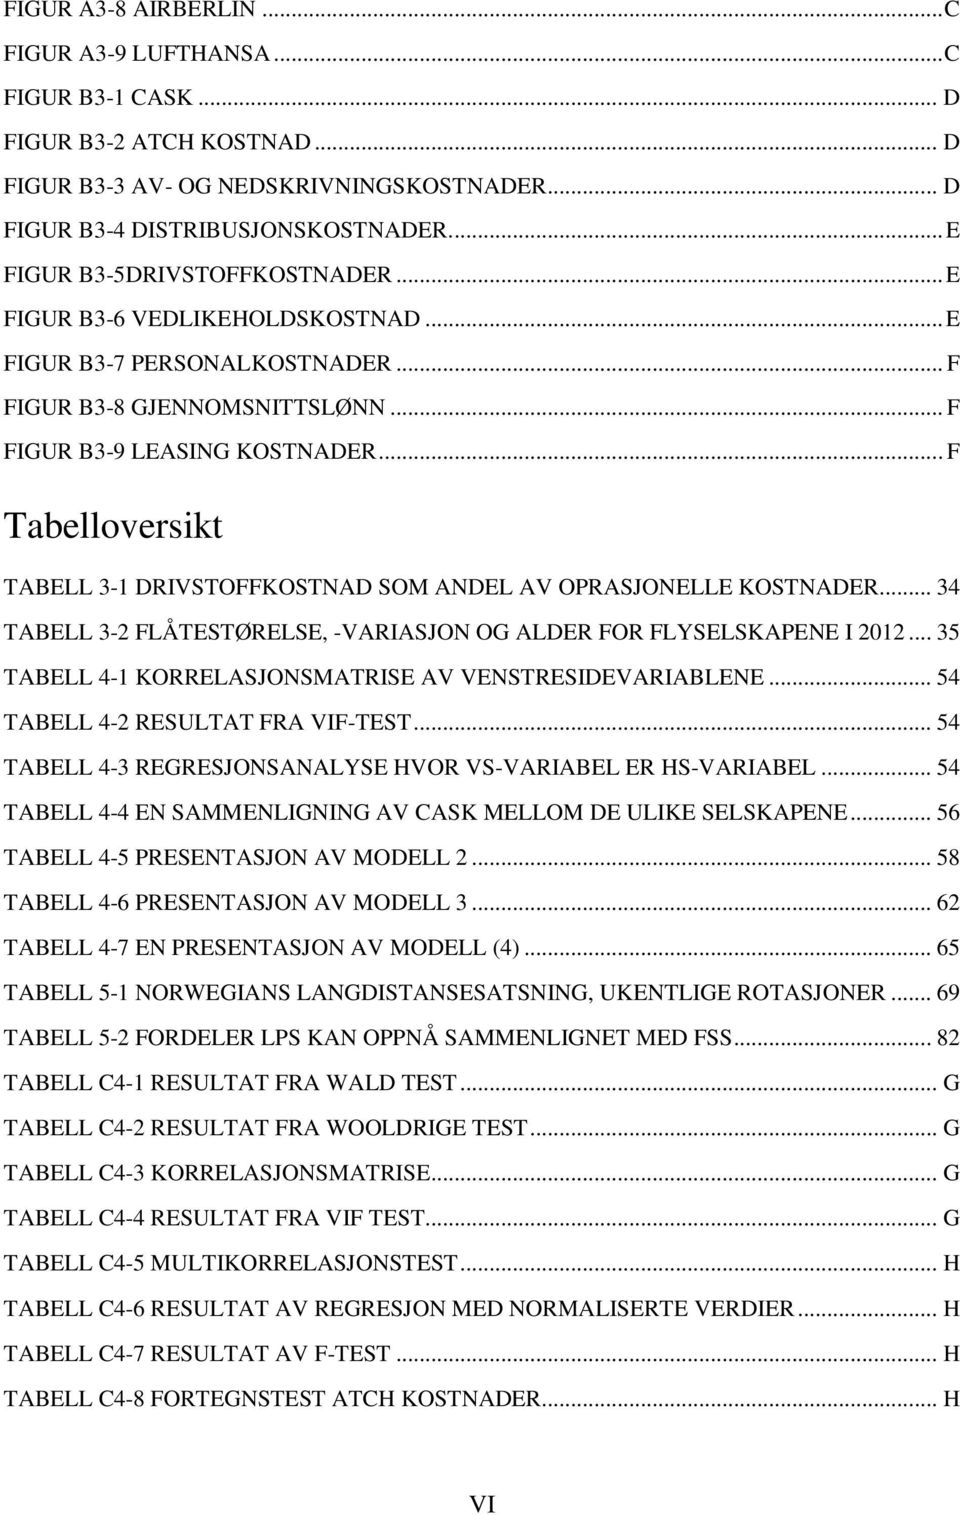 .. F Tabelloversikt TABELL 3-1 DRIVSTOFFKOSTNAD SOM ANDEL AV OPRASJONELLE KOSTNADER... 34 TABELL 3-2 FLÅTESTØRELSE, -VARIASJON OG ALDER FOR FLYSELSKAPENE I 2012.